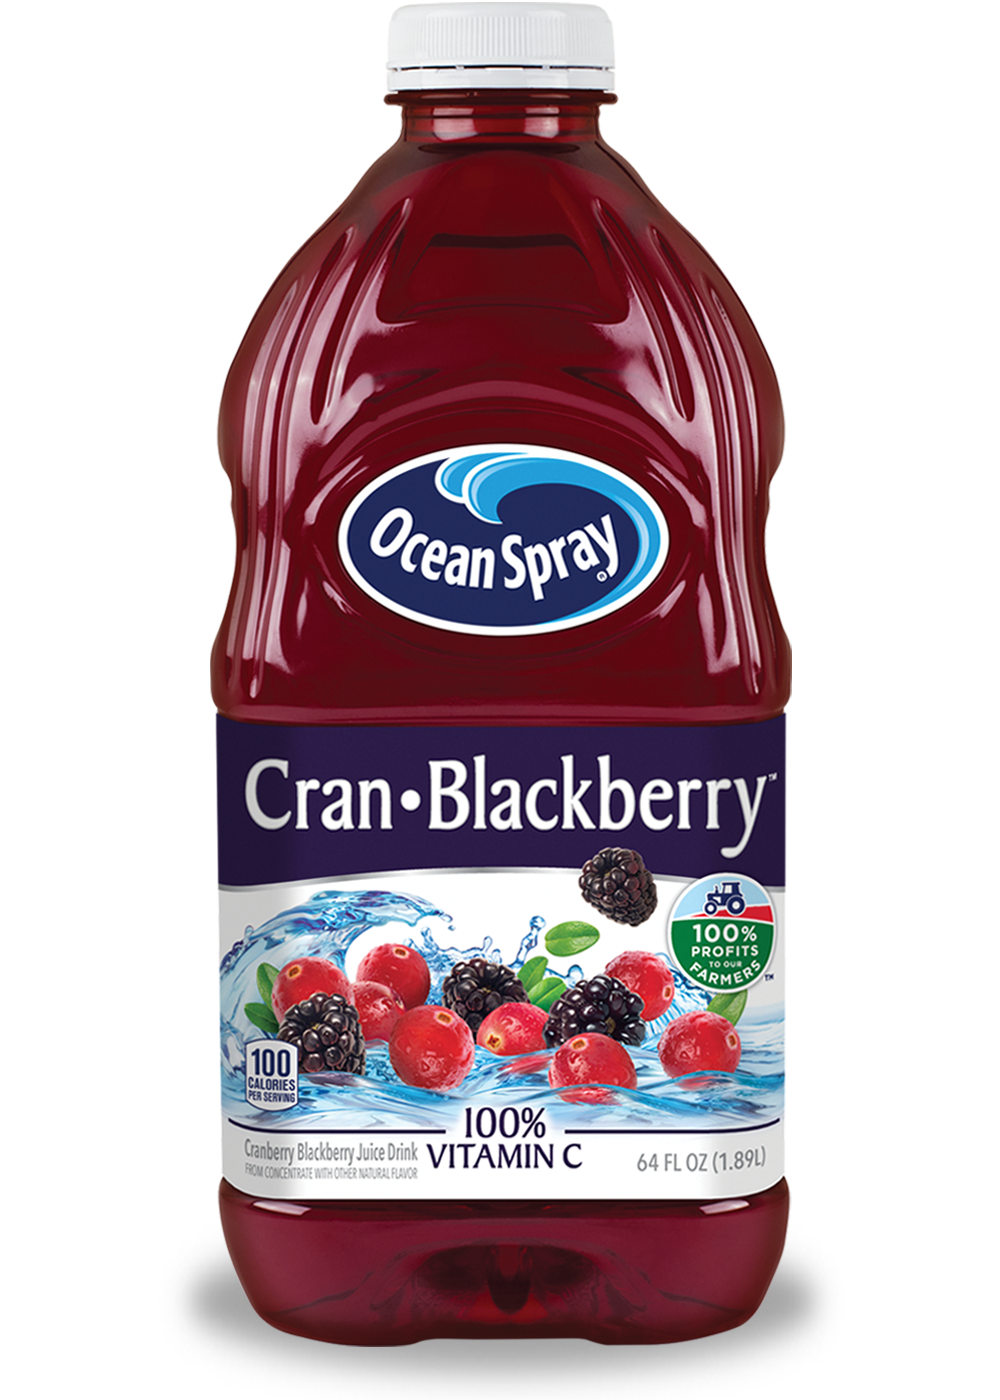 Cran•Blackberry™ Cranberry Blackberry Juice Drink